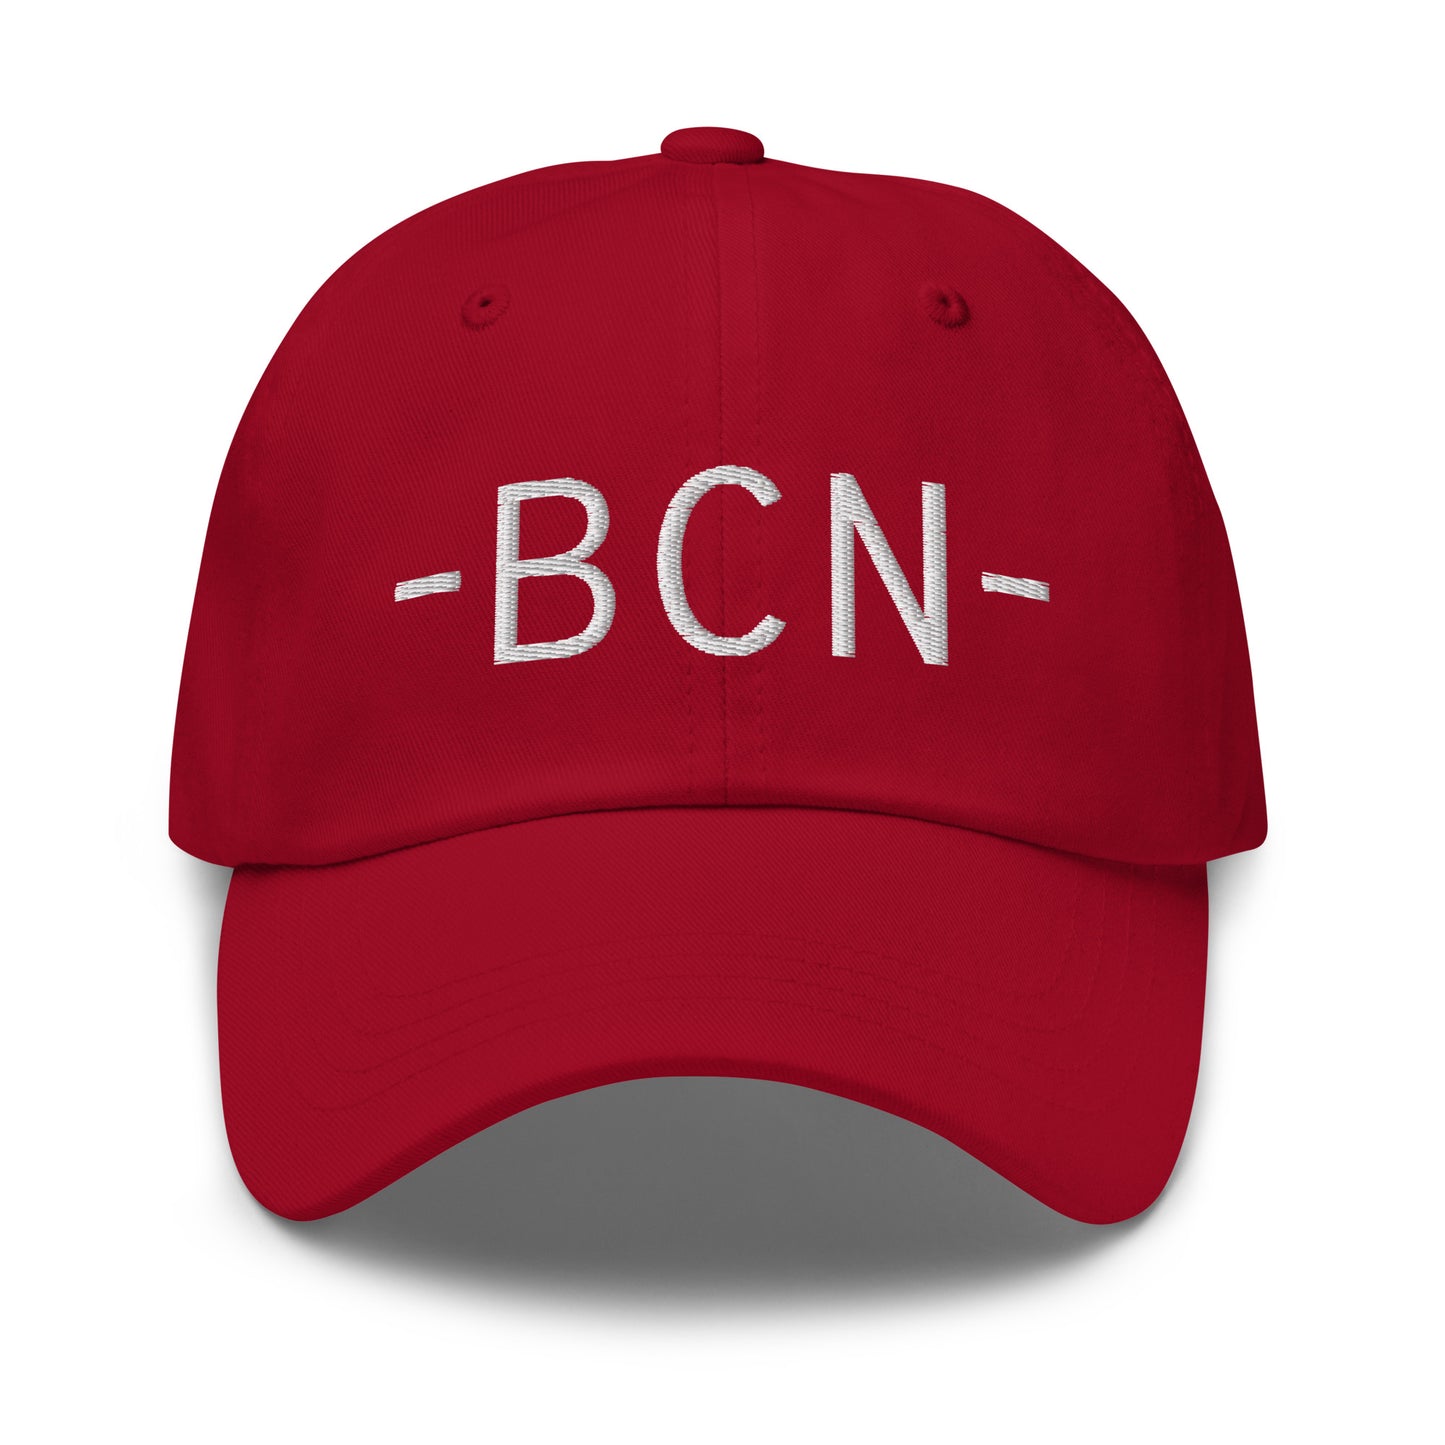 Souvenir Baseball Cap - White • BCN Barcelona • YHM Designs - Image 16